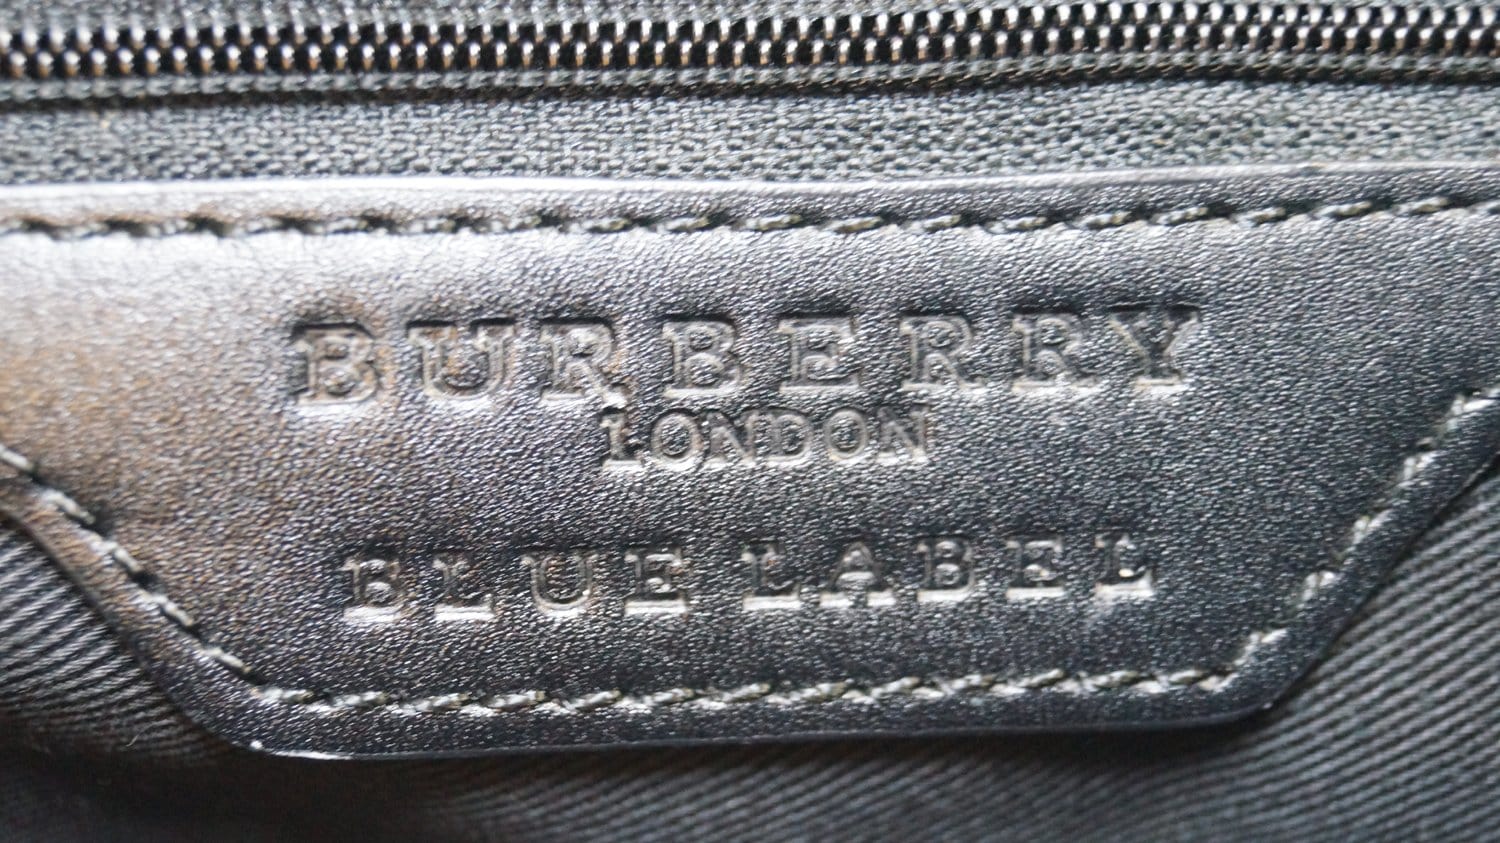 Vintage Burberry Blue Label 2 way Shoulder Bag / Backpack Purse